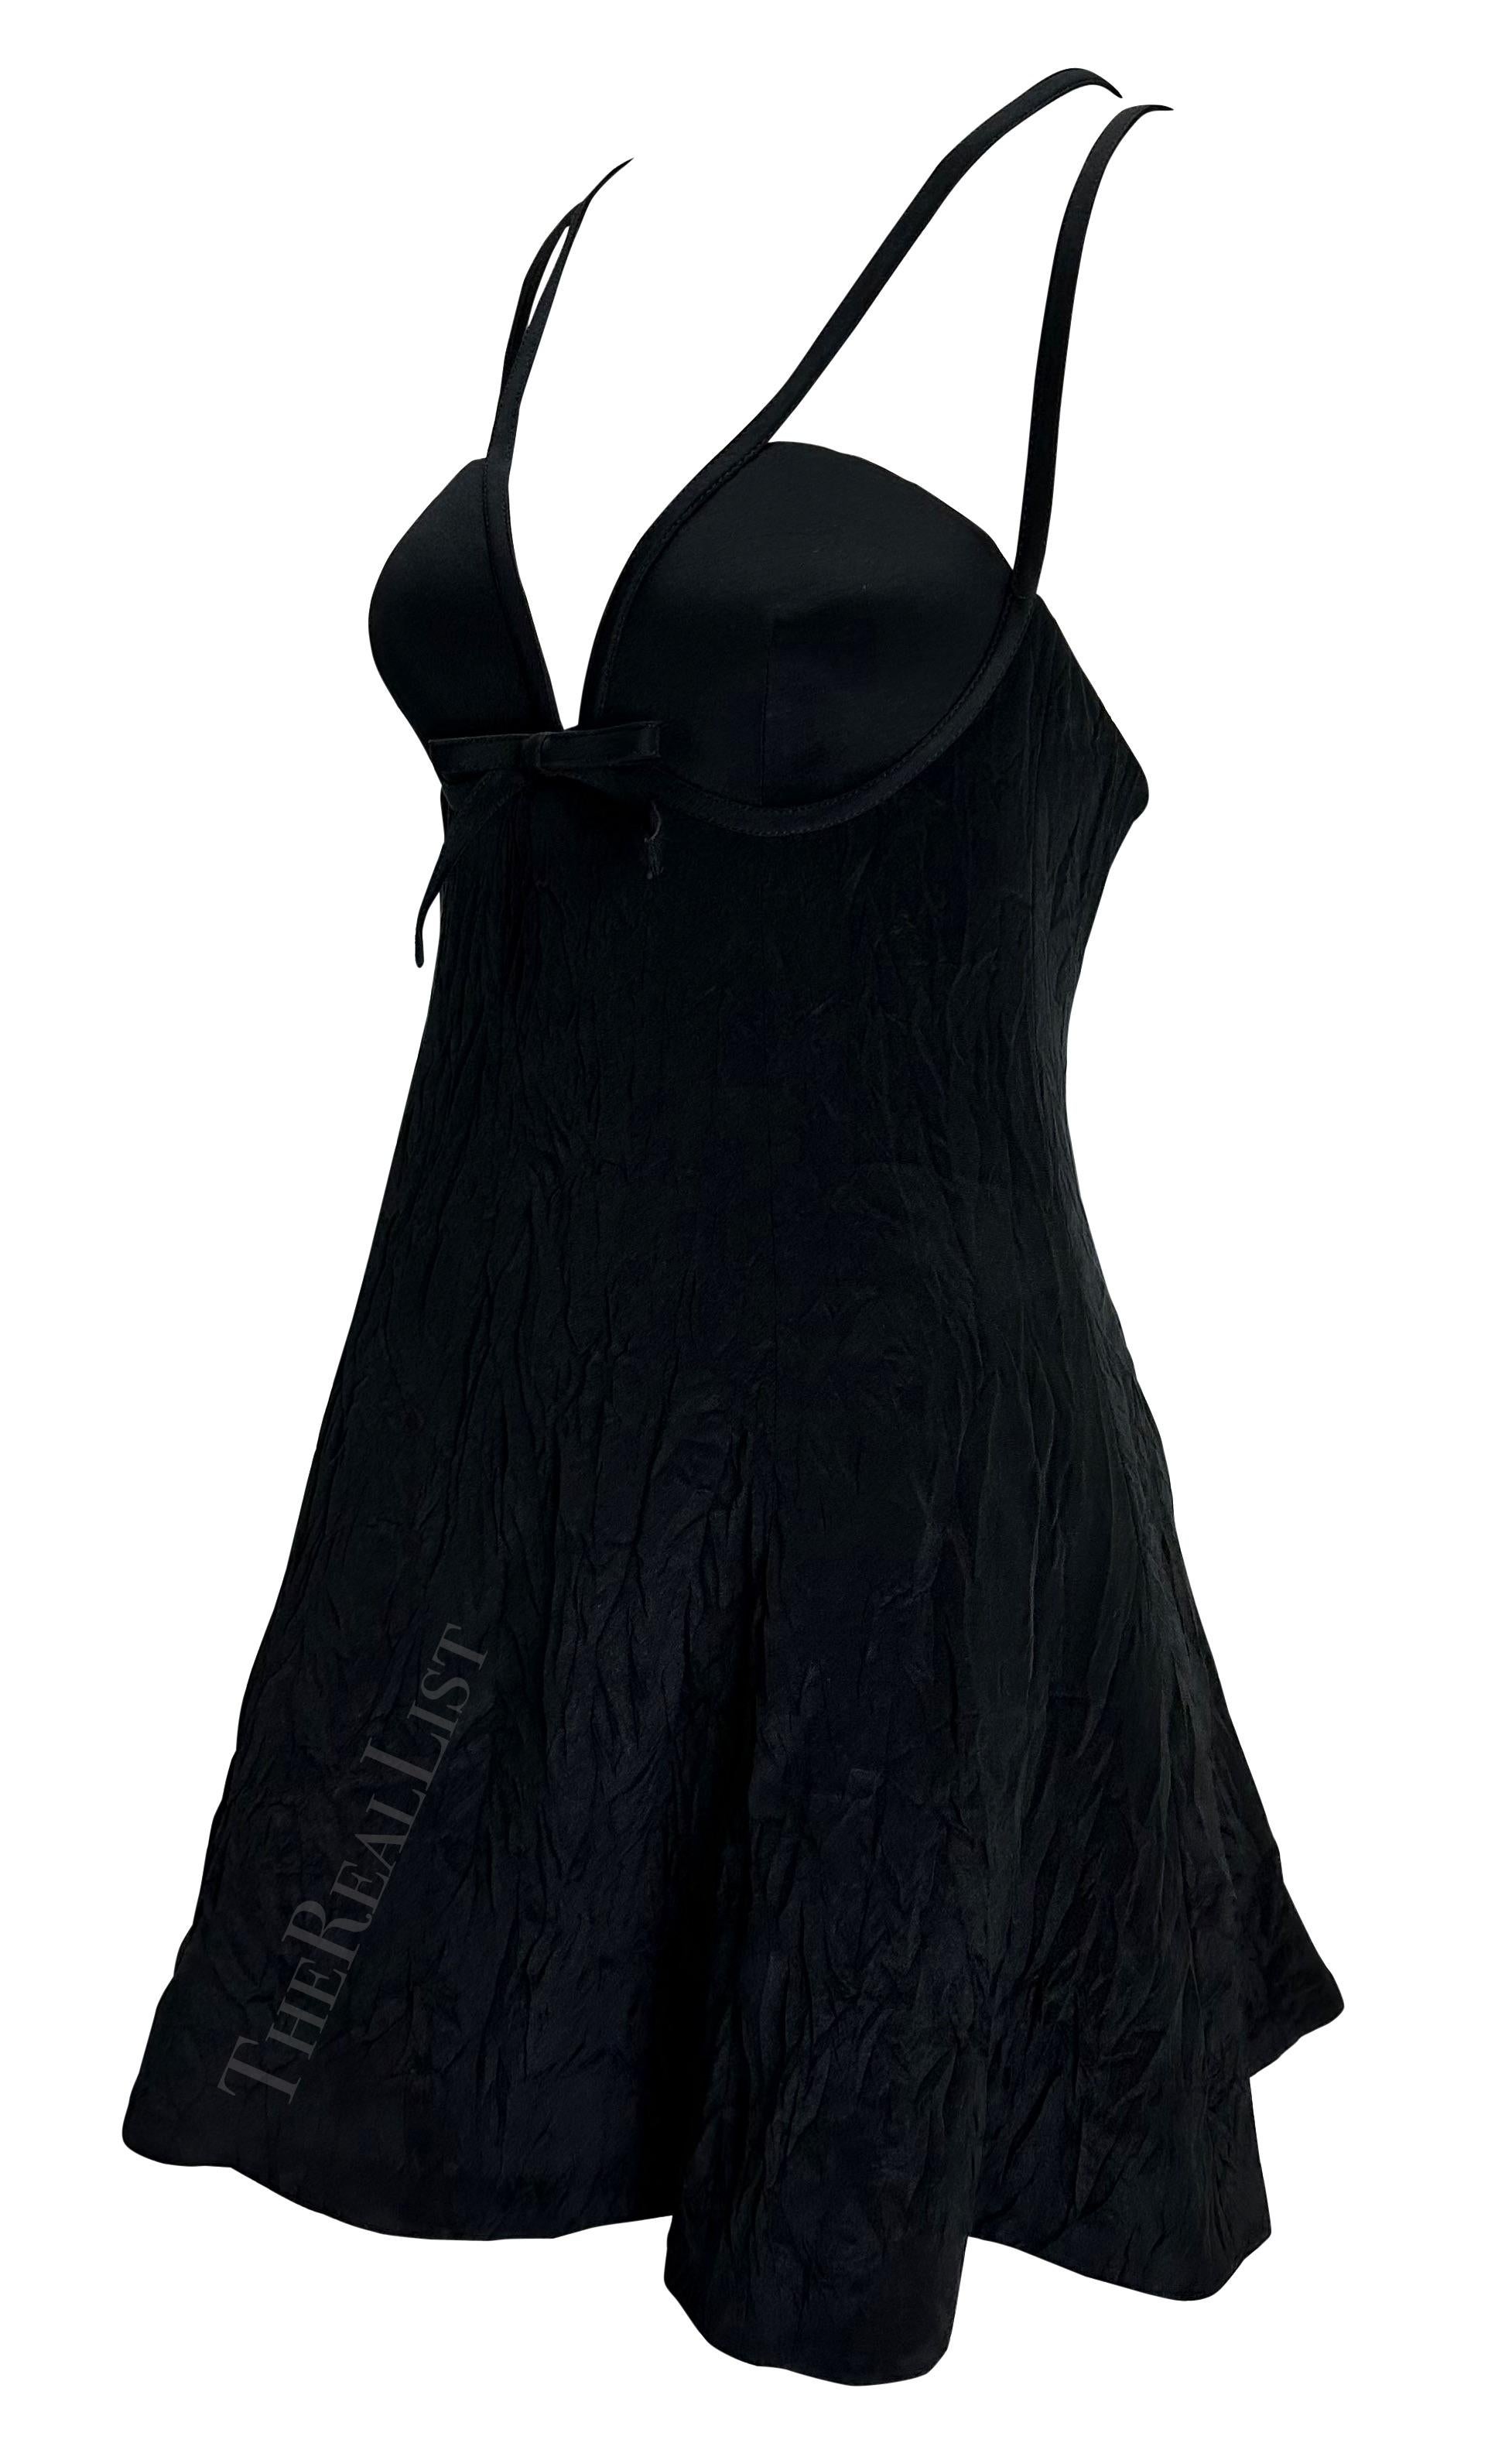 Voici une superbe robe noire de baby doll de Gianni Versace, créée par Gianni Versace. Issue de la collection printemps/été 1994, cette mini robe présente une jupe évasée volontairement froissée et est complétée par des bretelles spaghetti qui se